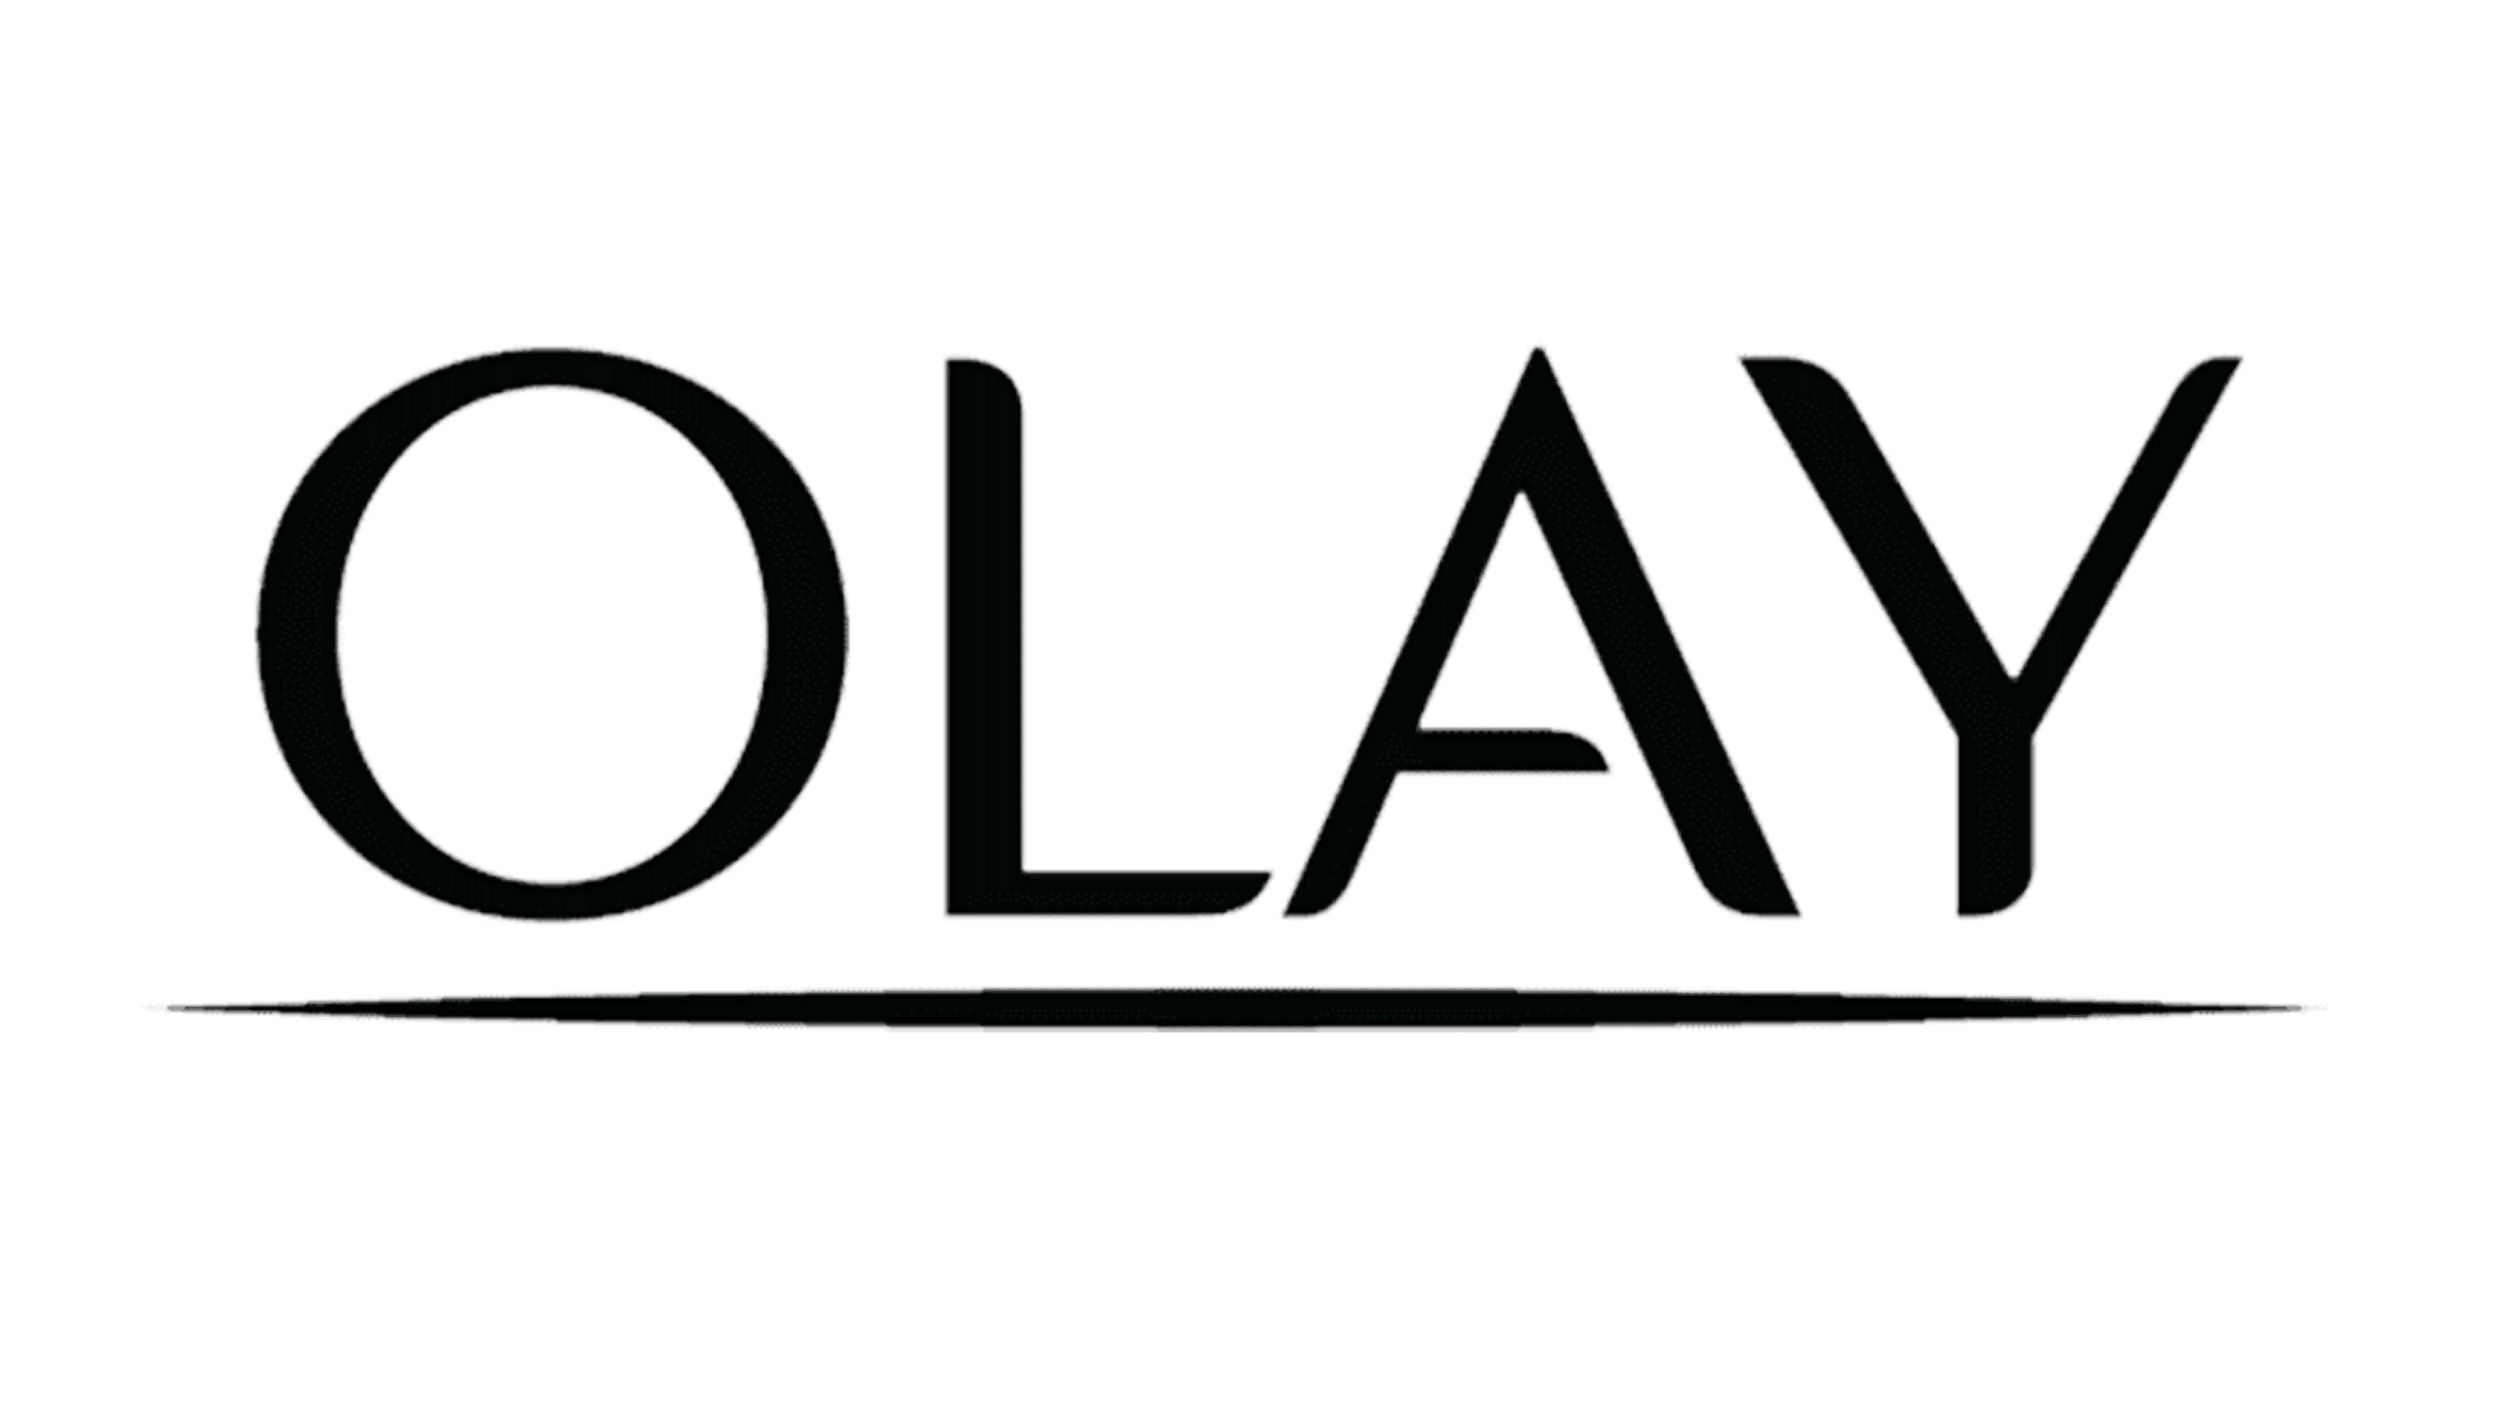 Olay-logo.png